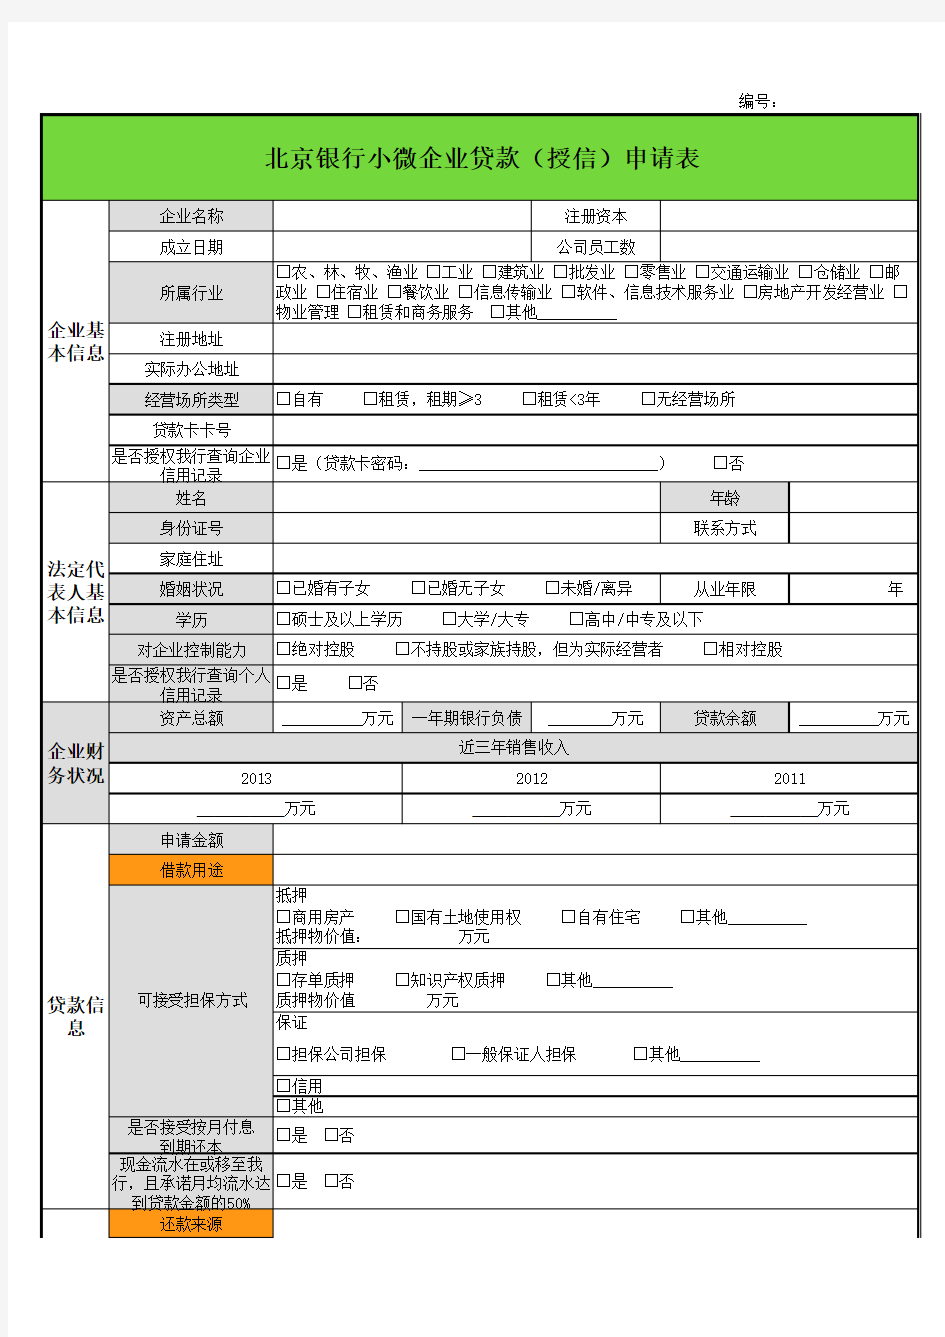 小微企业授信资料清单2014-12